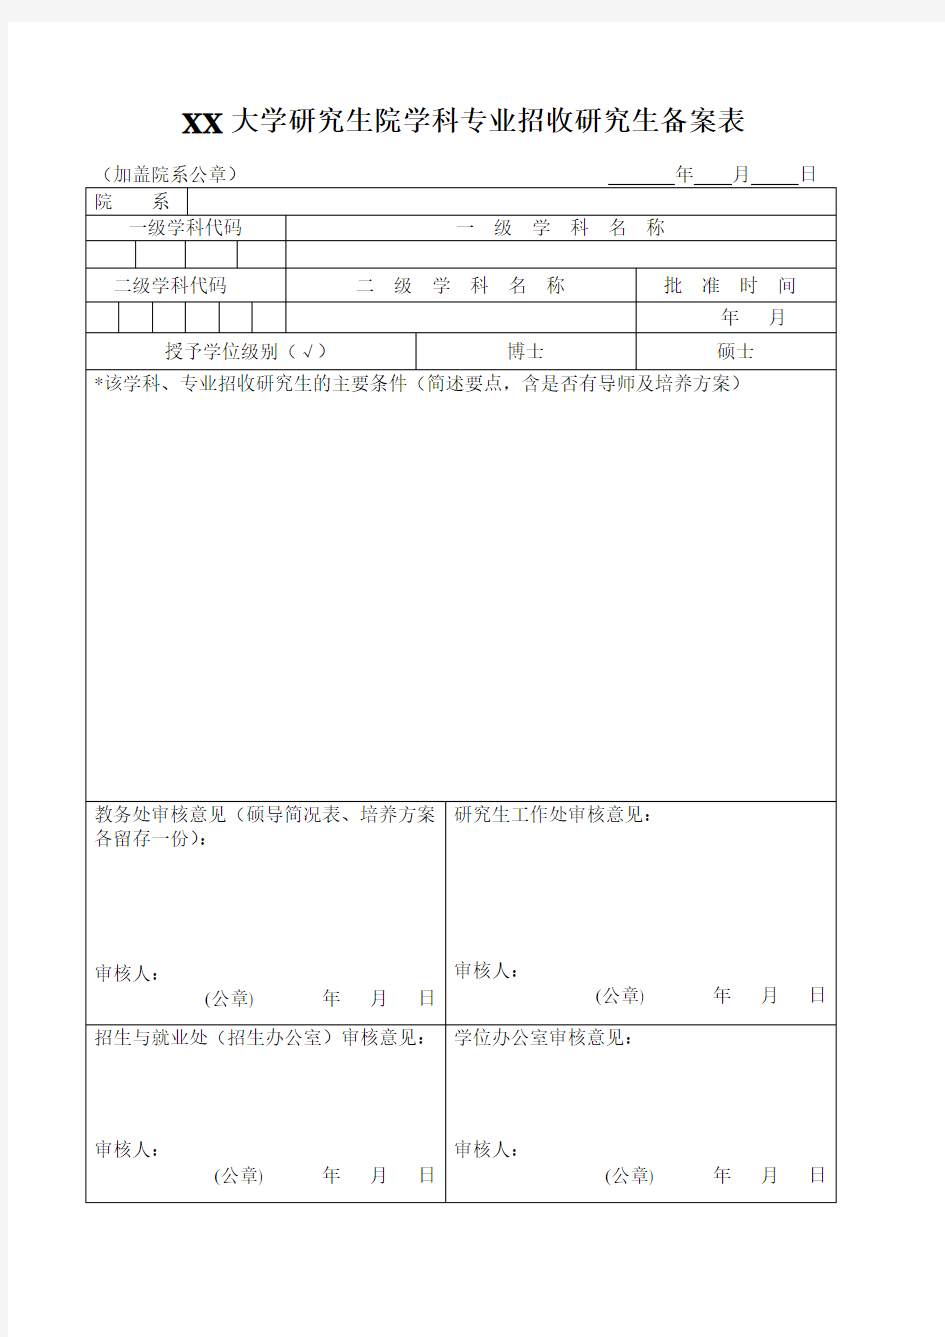 中国社会科学院大学(研究生院)学科专业招收研究生备案表